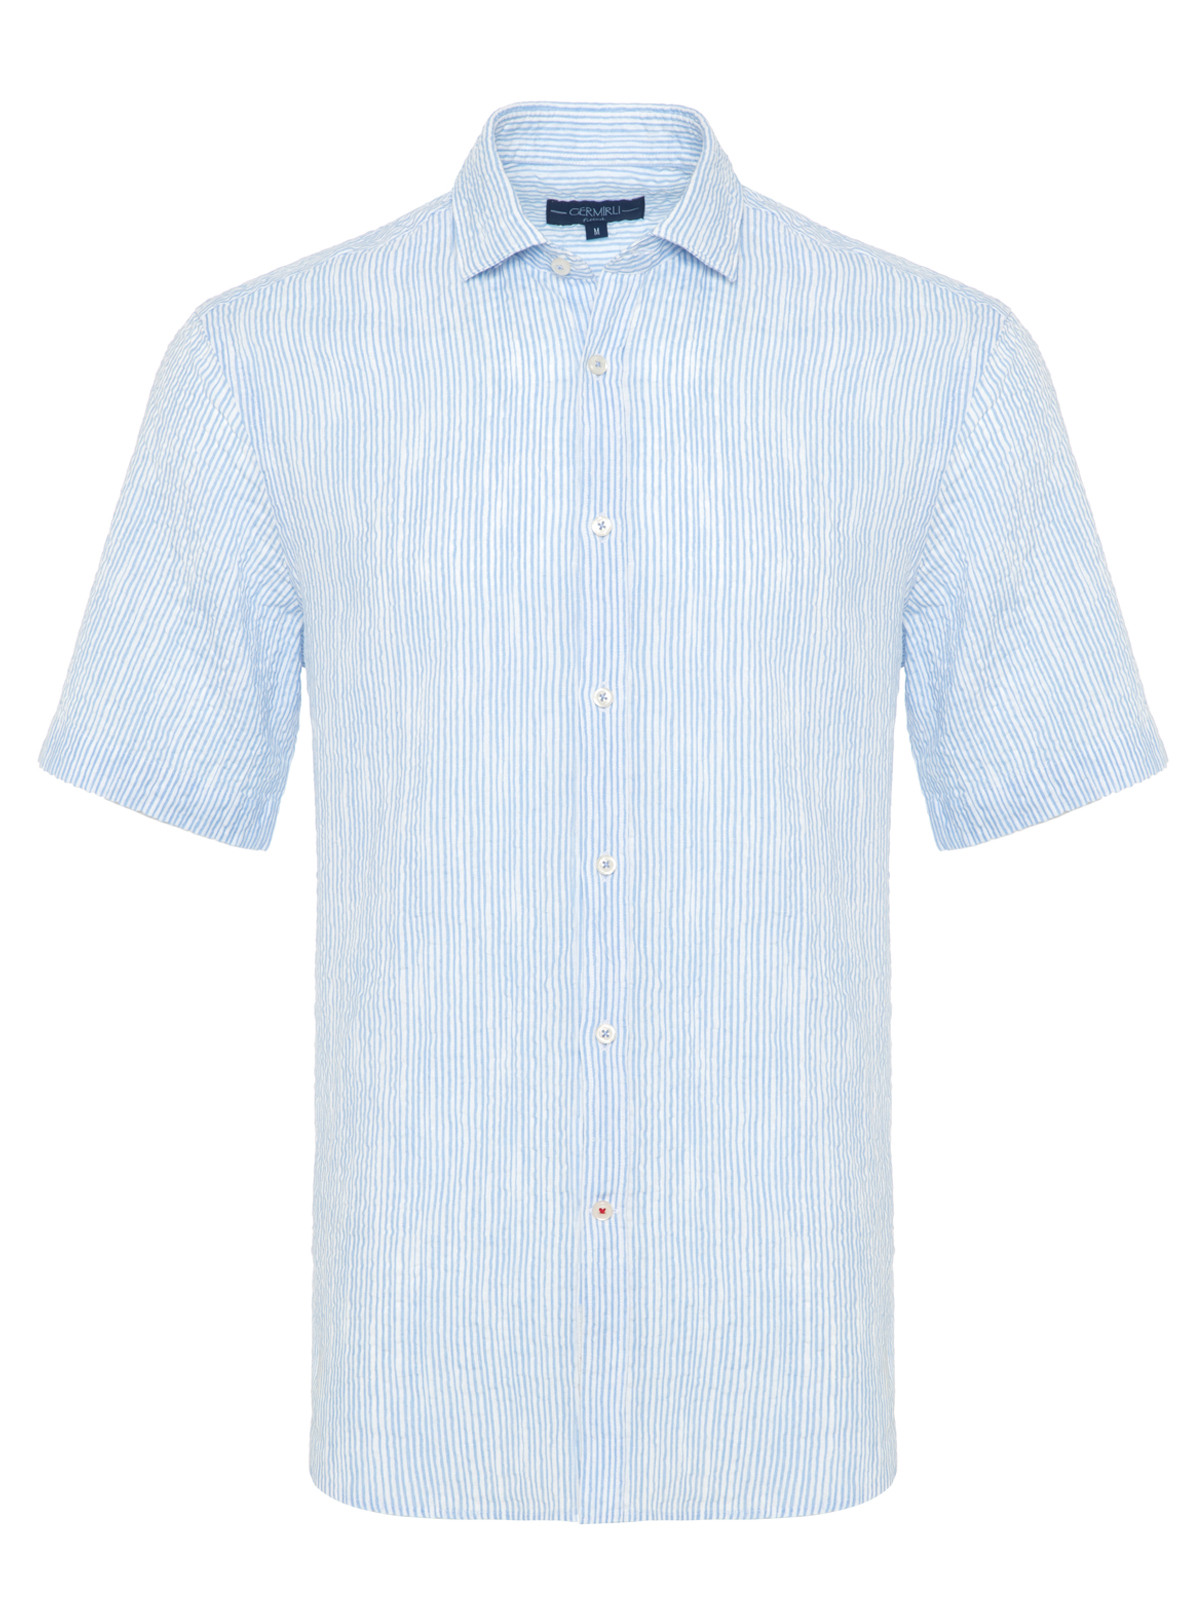 Germirli - Germirli Mavi Beyaz Çizgili Seersucker Kısa Kollu Tailor Fit Gömlek